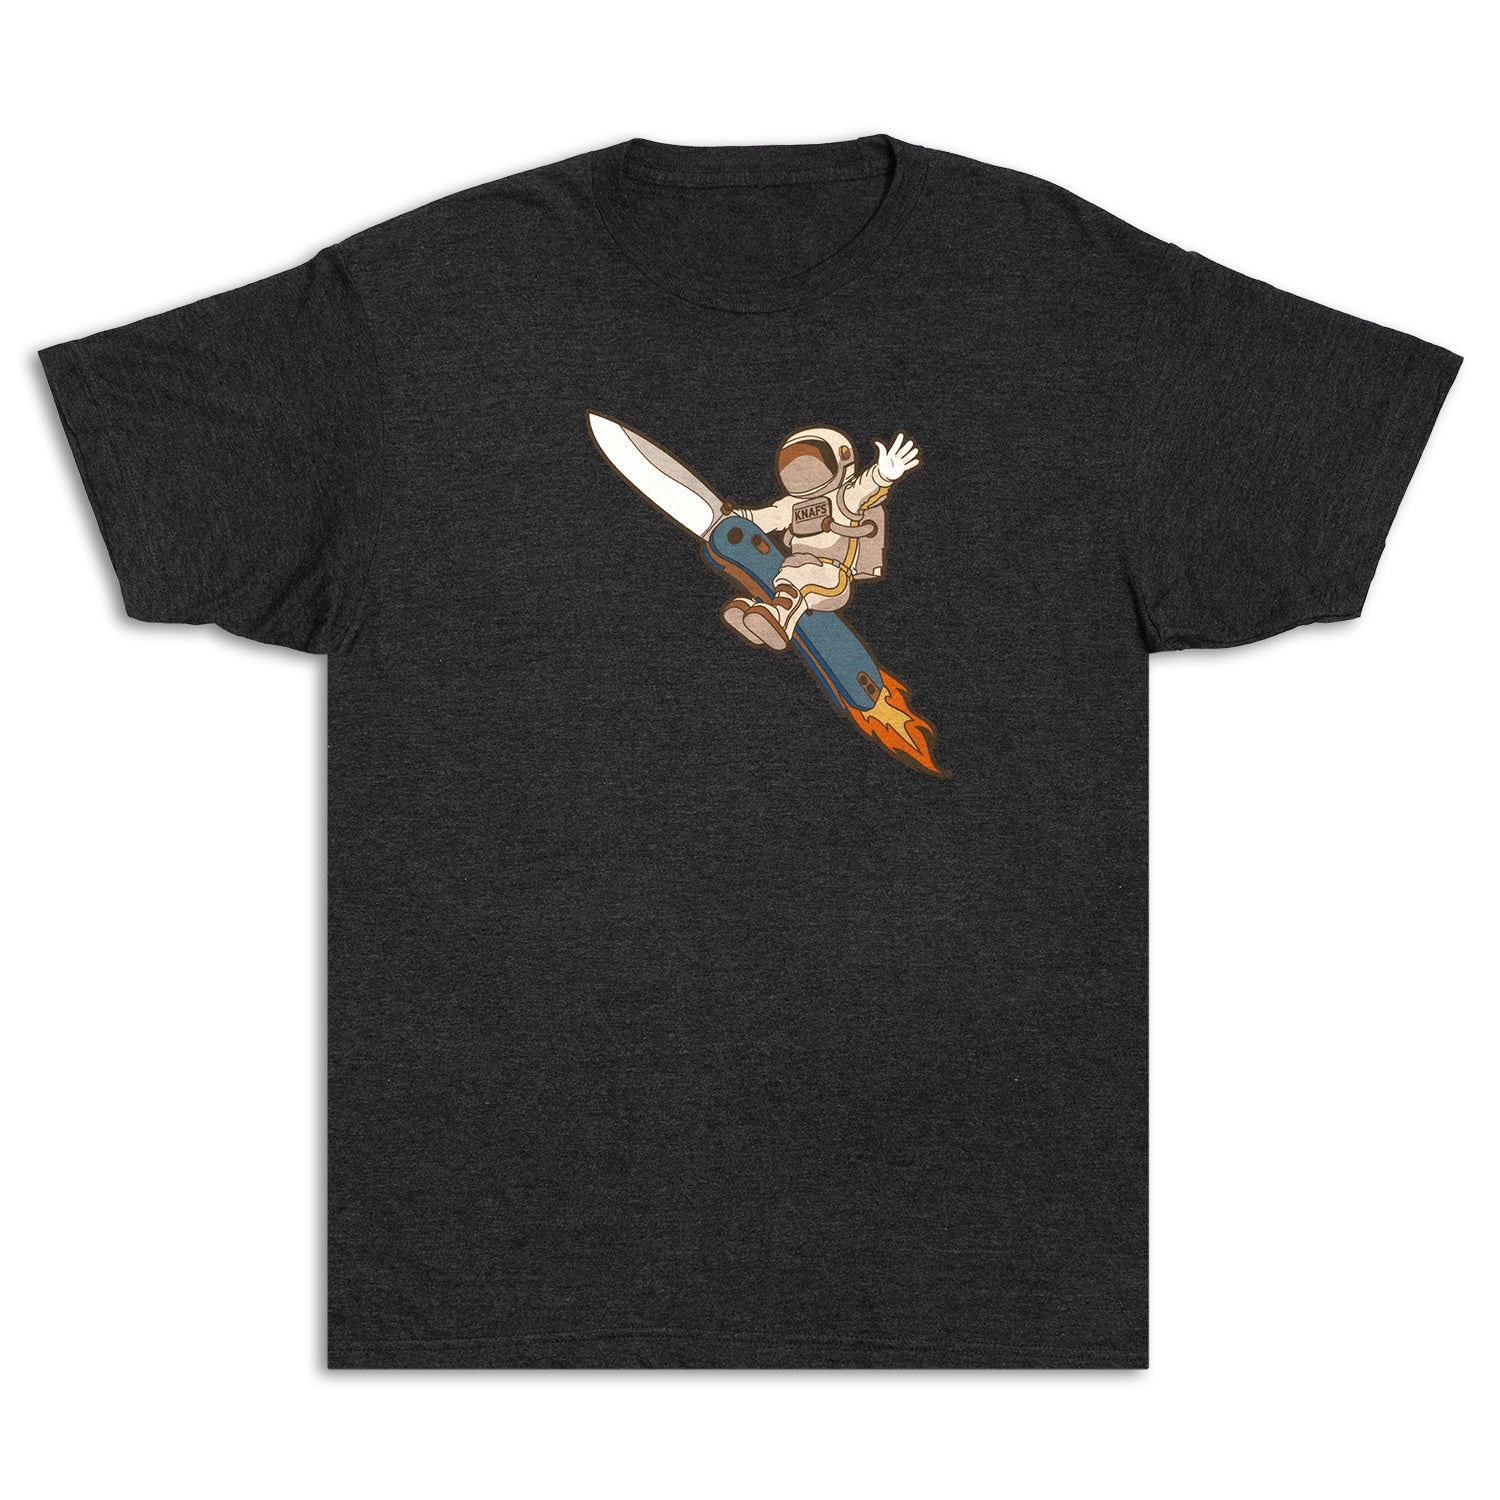 Knafs AstroDude T-Shirt